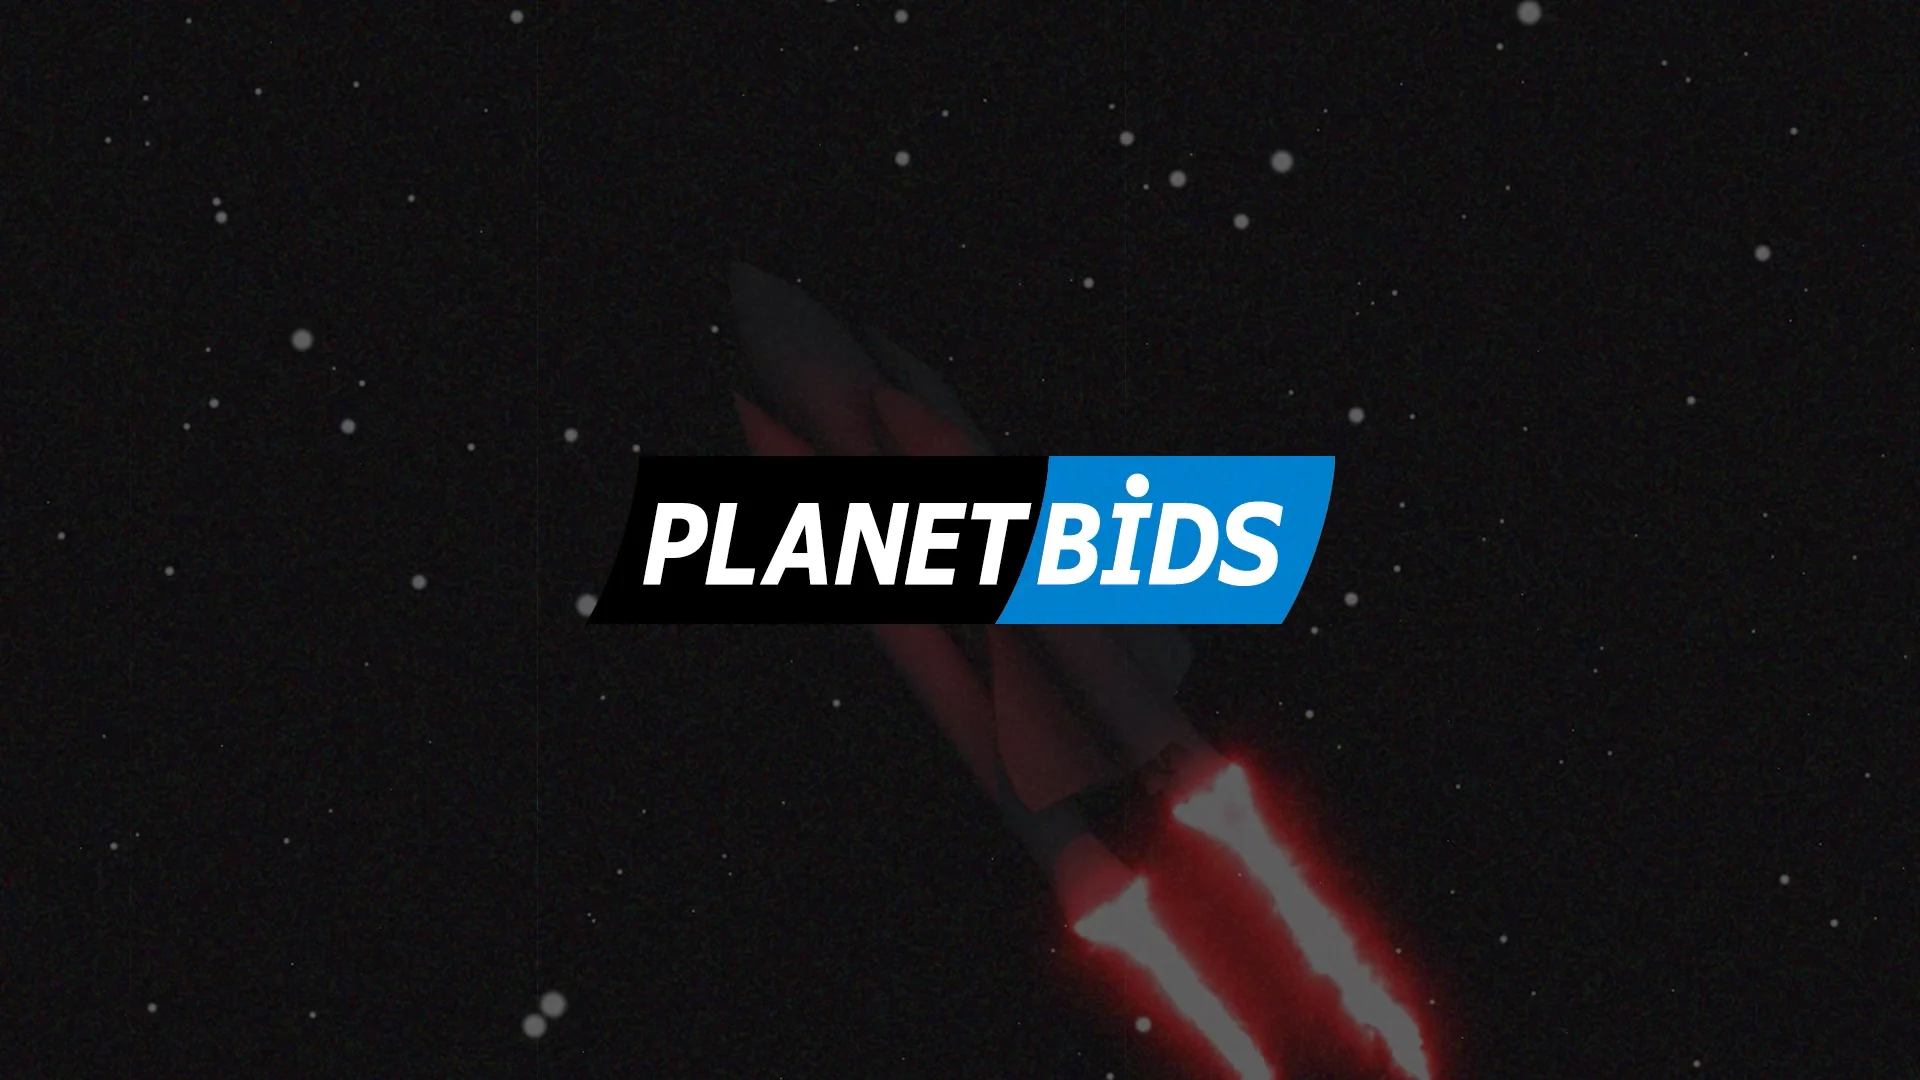 PlanetBids(30sec)_M1 on Vimeo